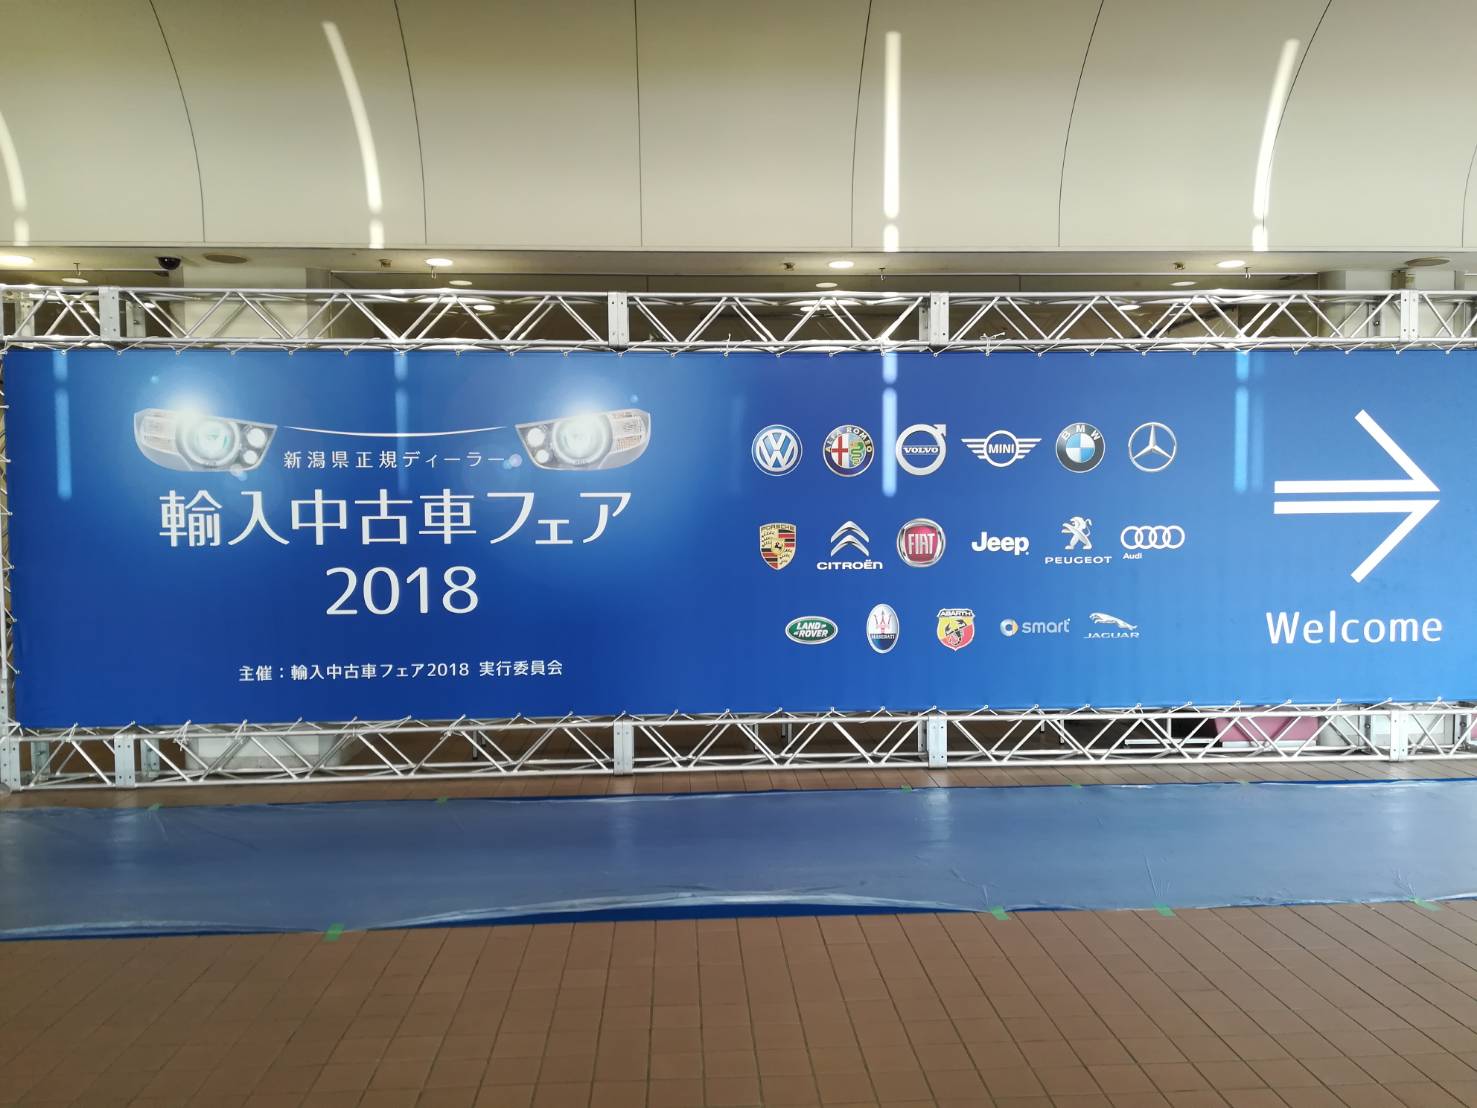 新潟県正規ディーラー輸入中古車フェア2018 in Niigata！！！